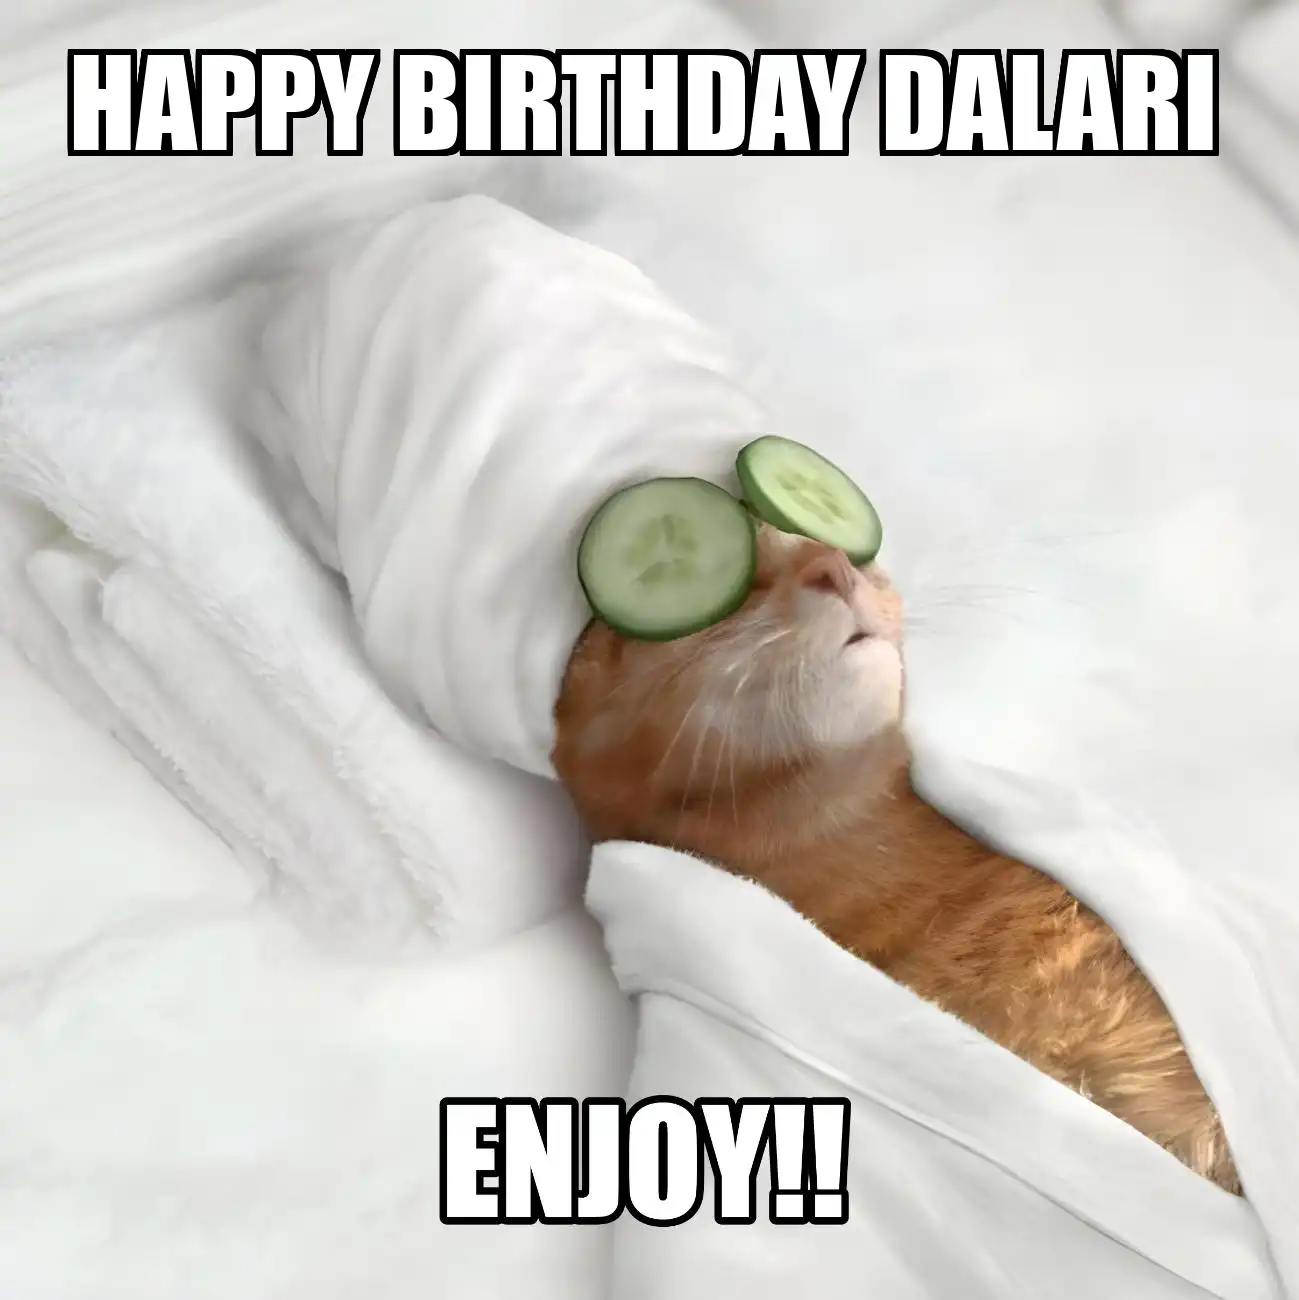 Happy Birthday Dalari Enjoy Cat Meme